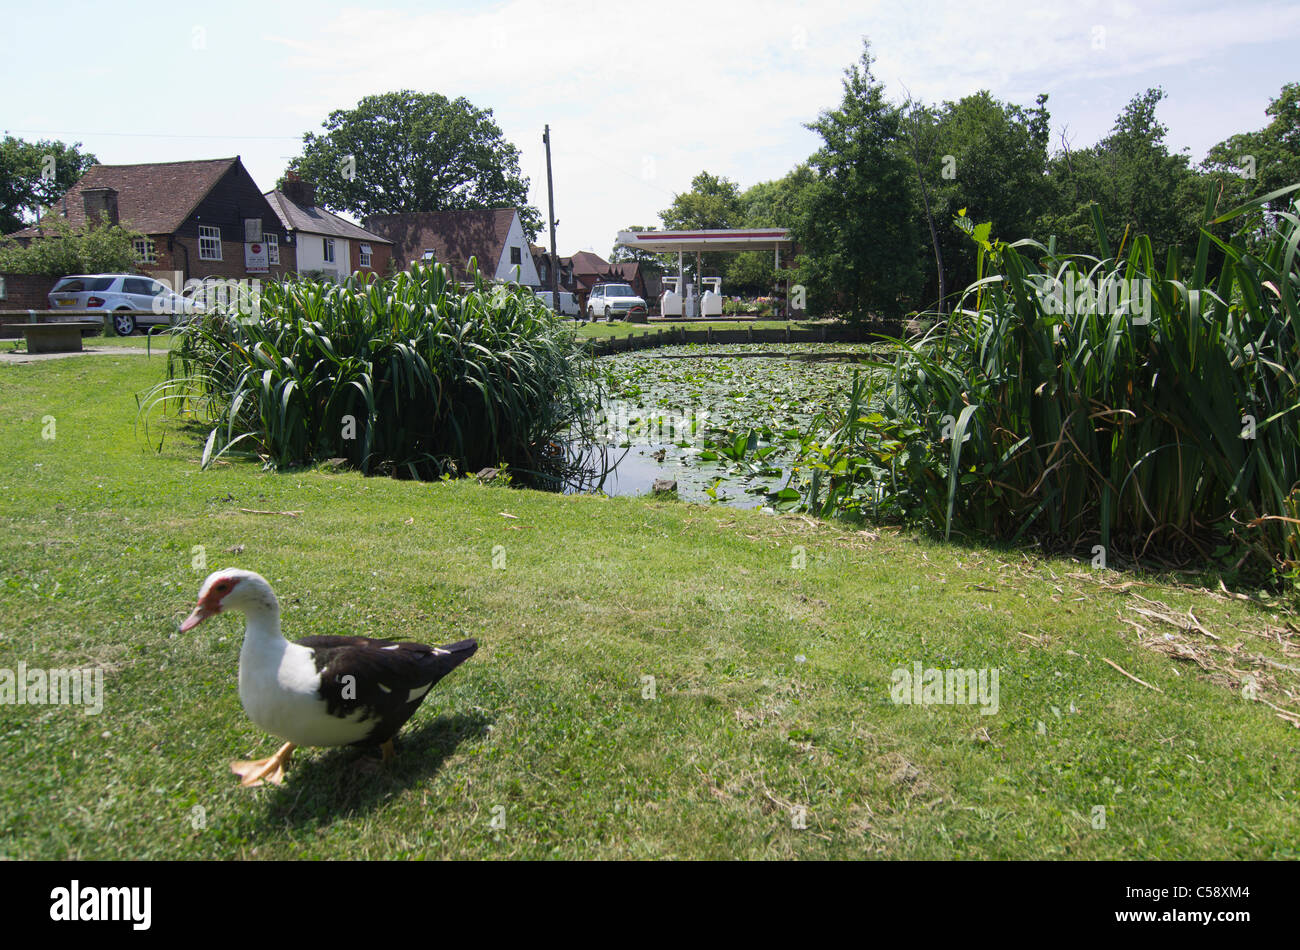 Un village anglais typique, quatre Ormes, près de Canterbury, Kent, avec étang, nénuphars, roseaux, station essence et canards Banque D'Images